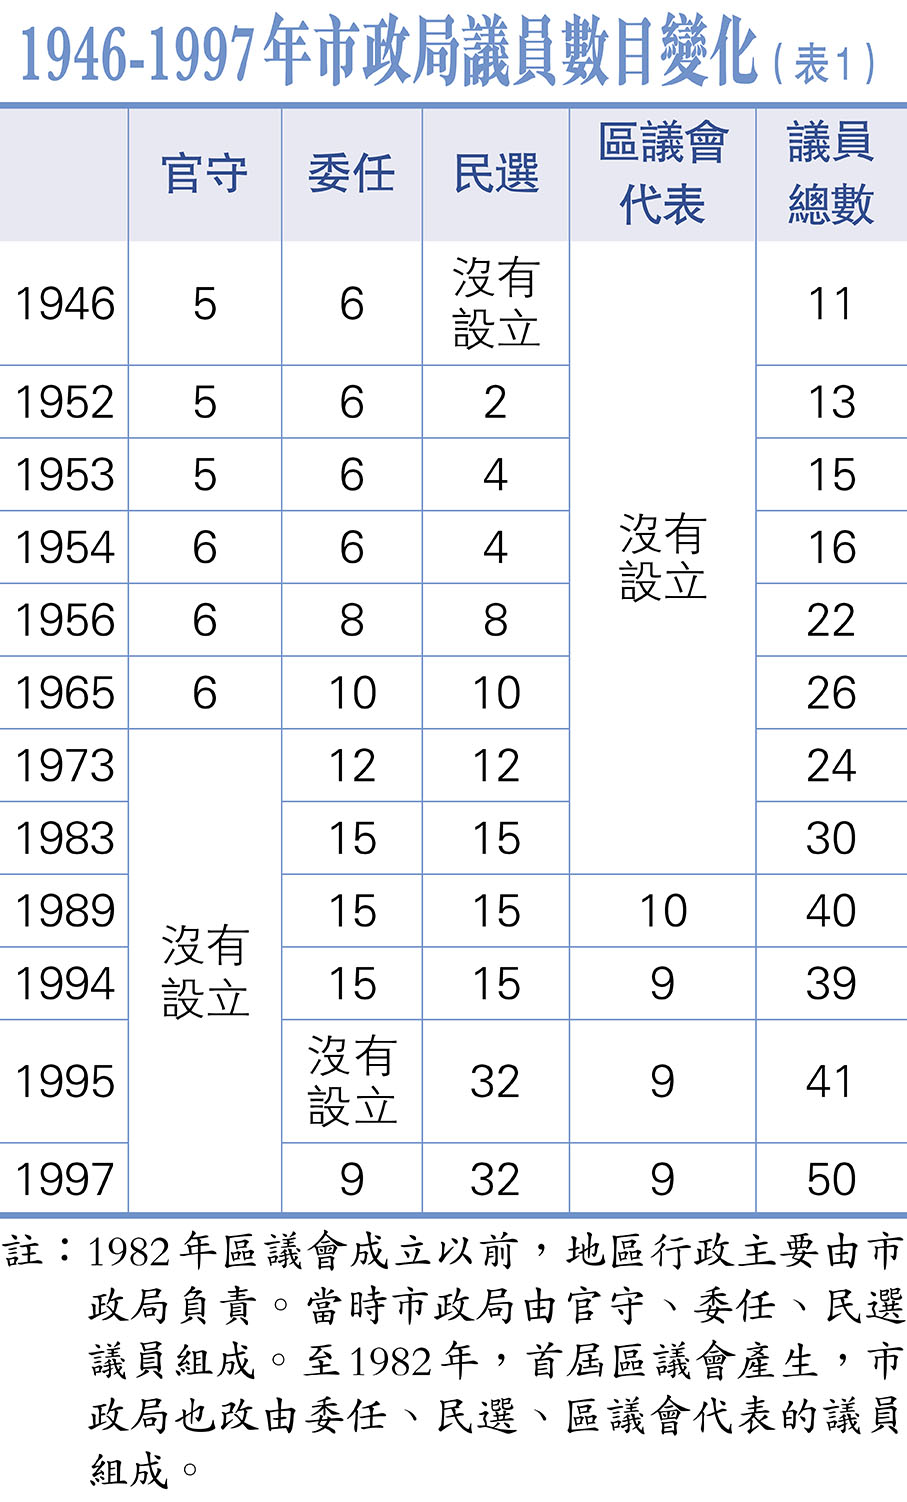 1946-1997年市政局議員數目變化